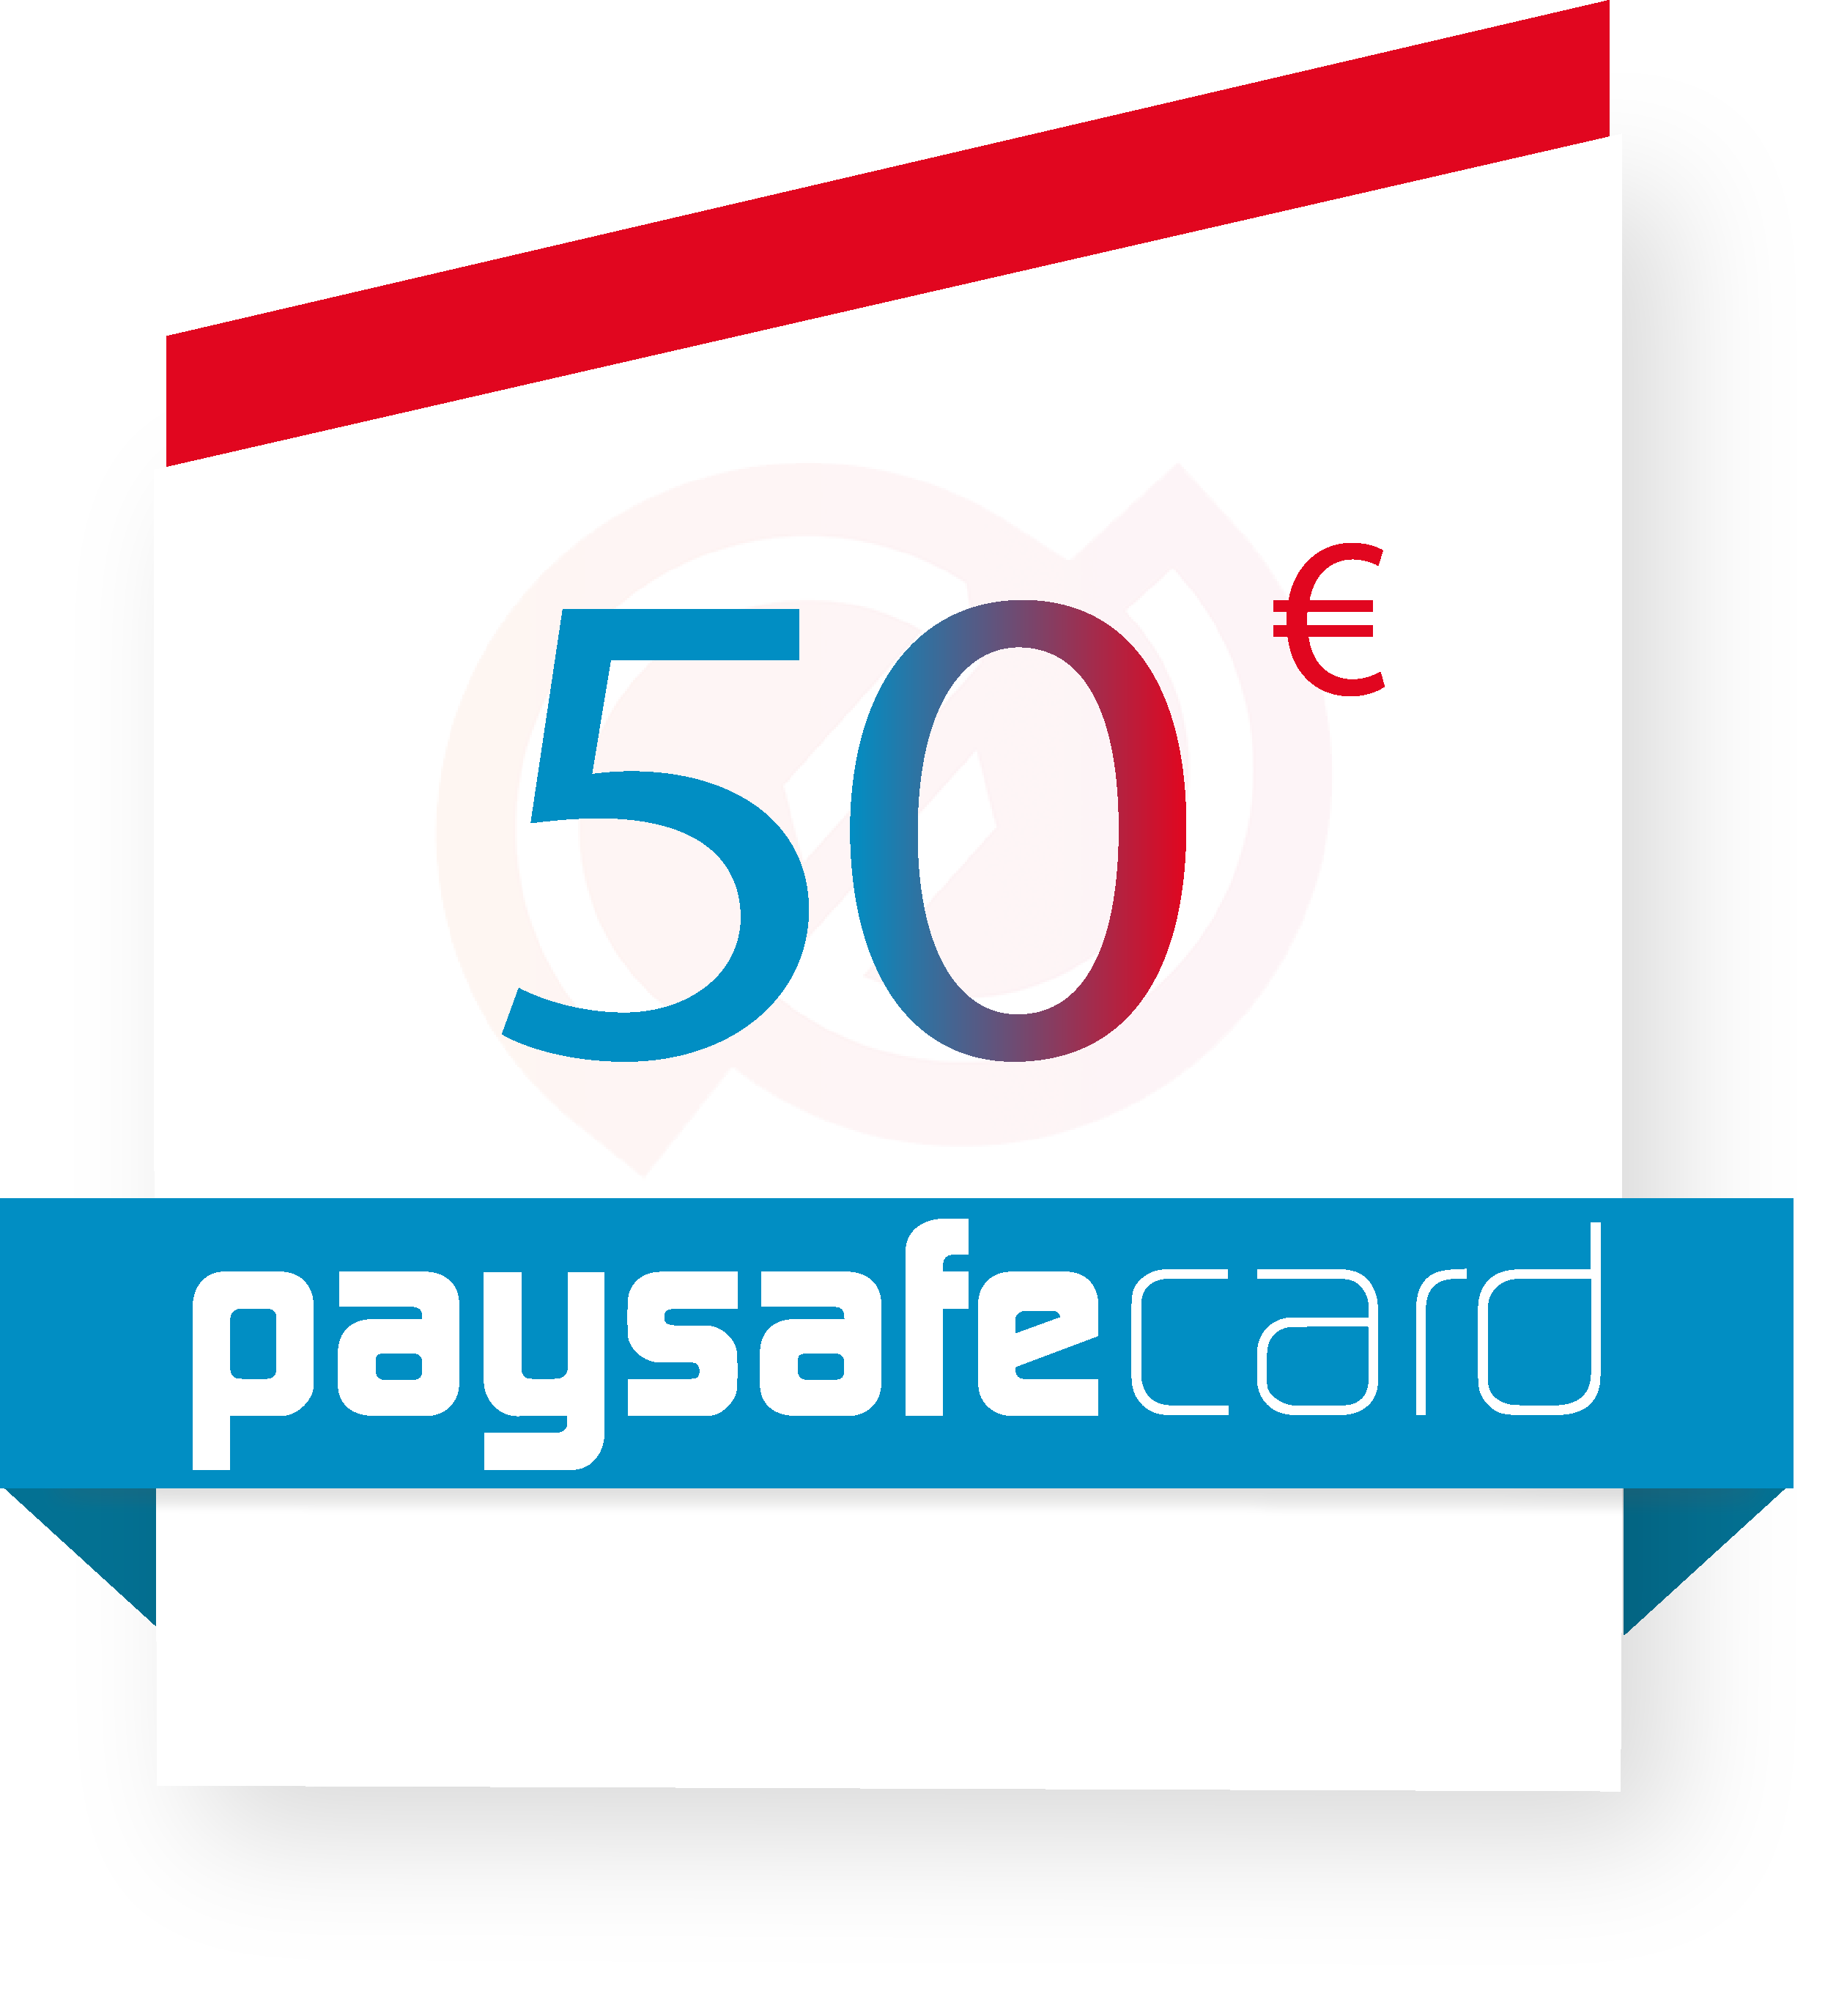 Paysafecard 50€